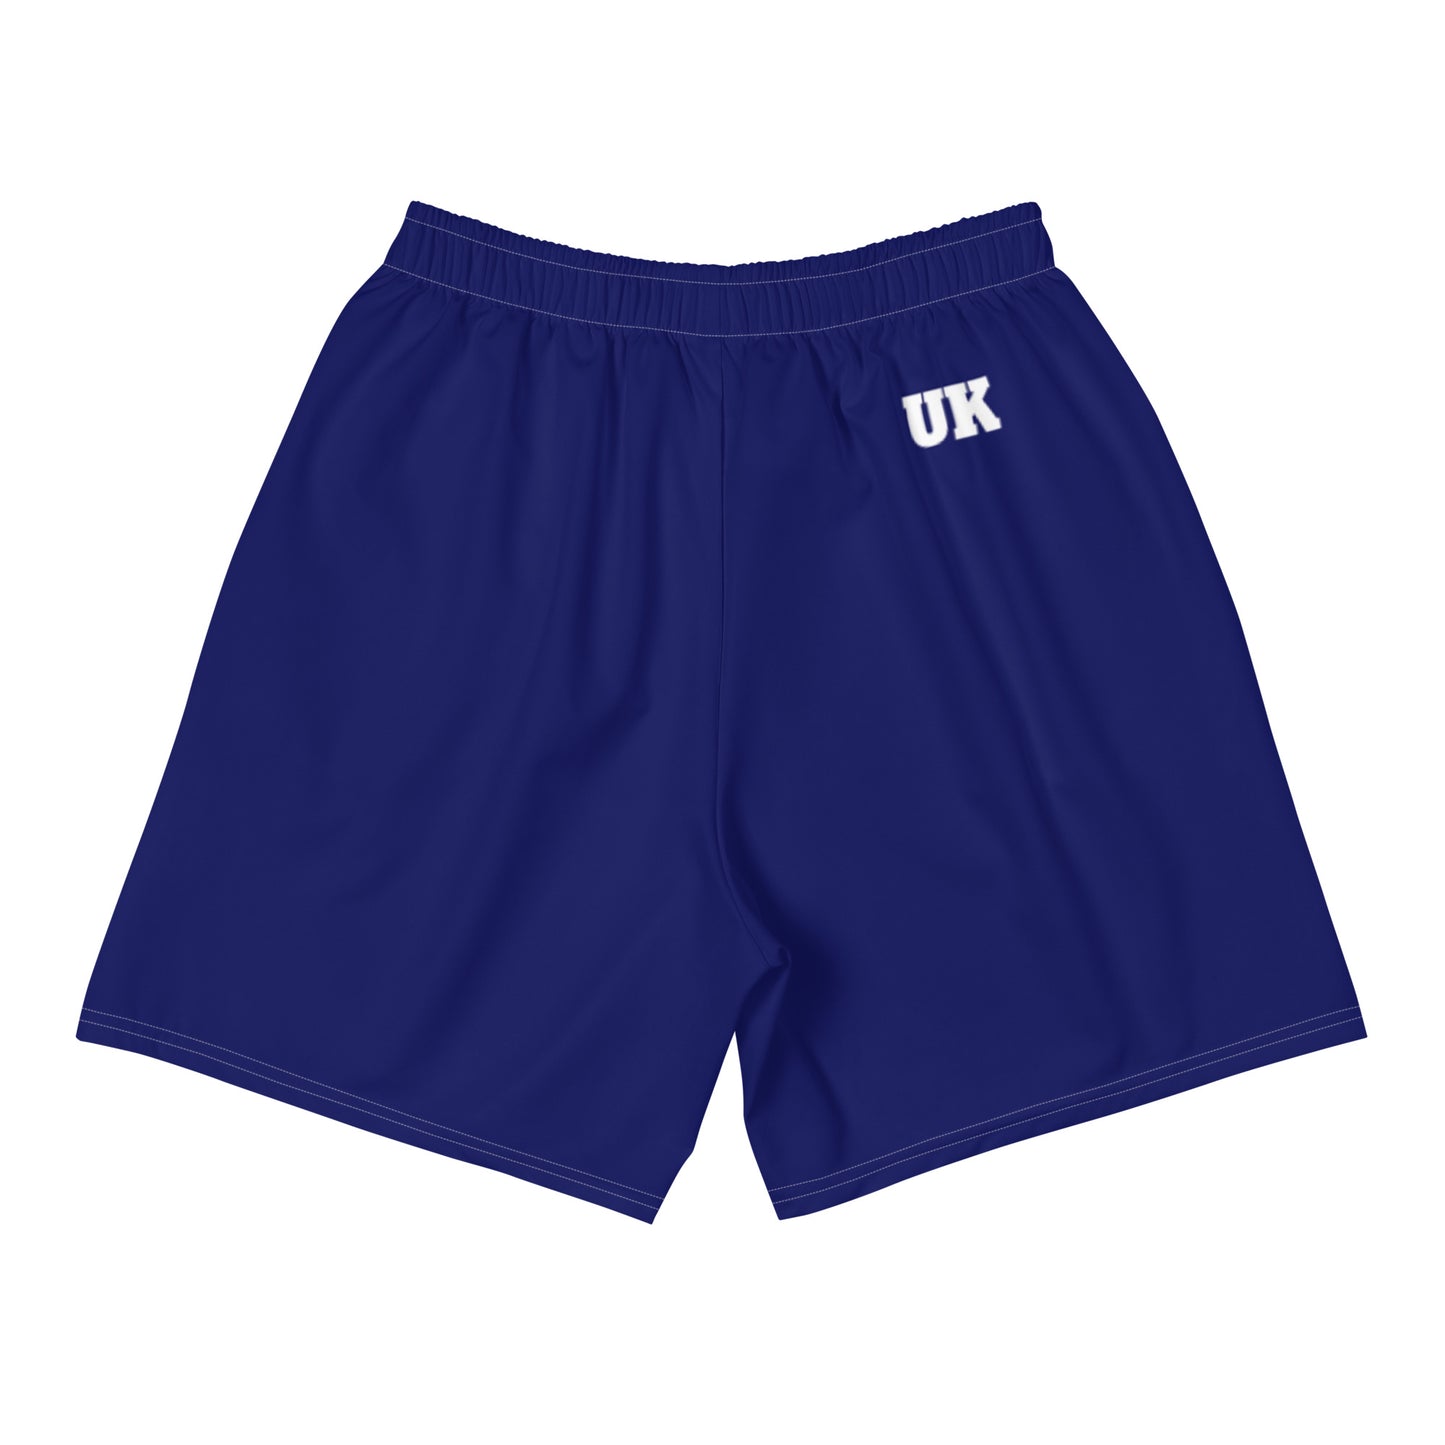 Union Jack Shorts Hommes / Union Jack Vêtements / Vêtements britanniques / Vêtements Patriot / Eco Friendly